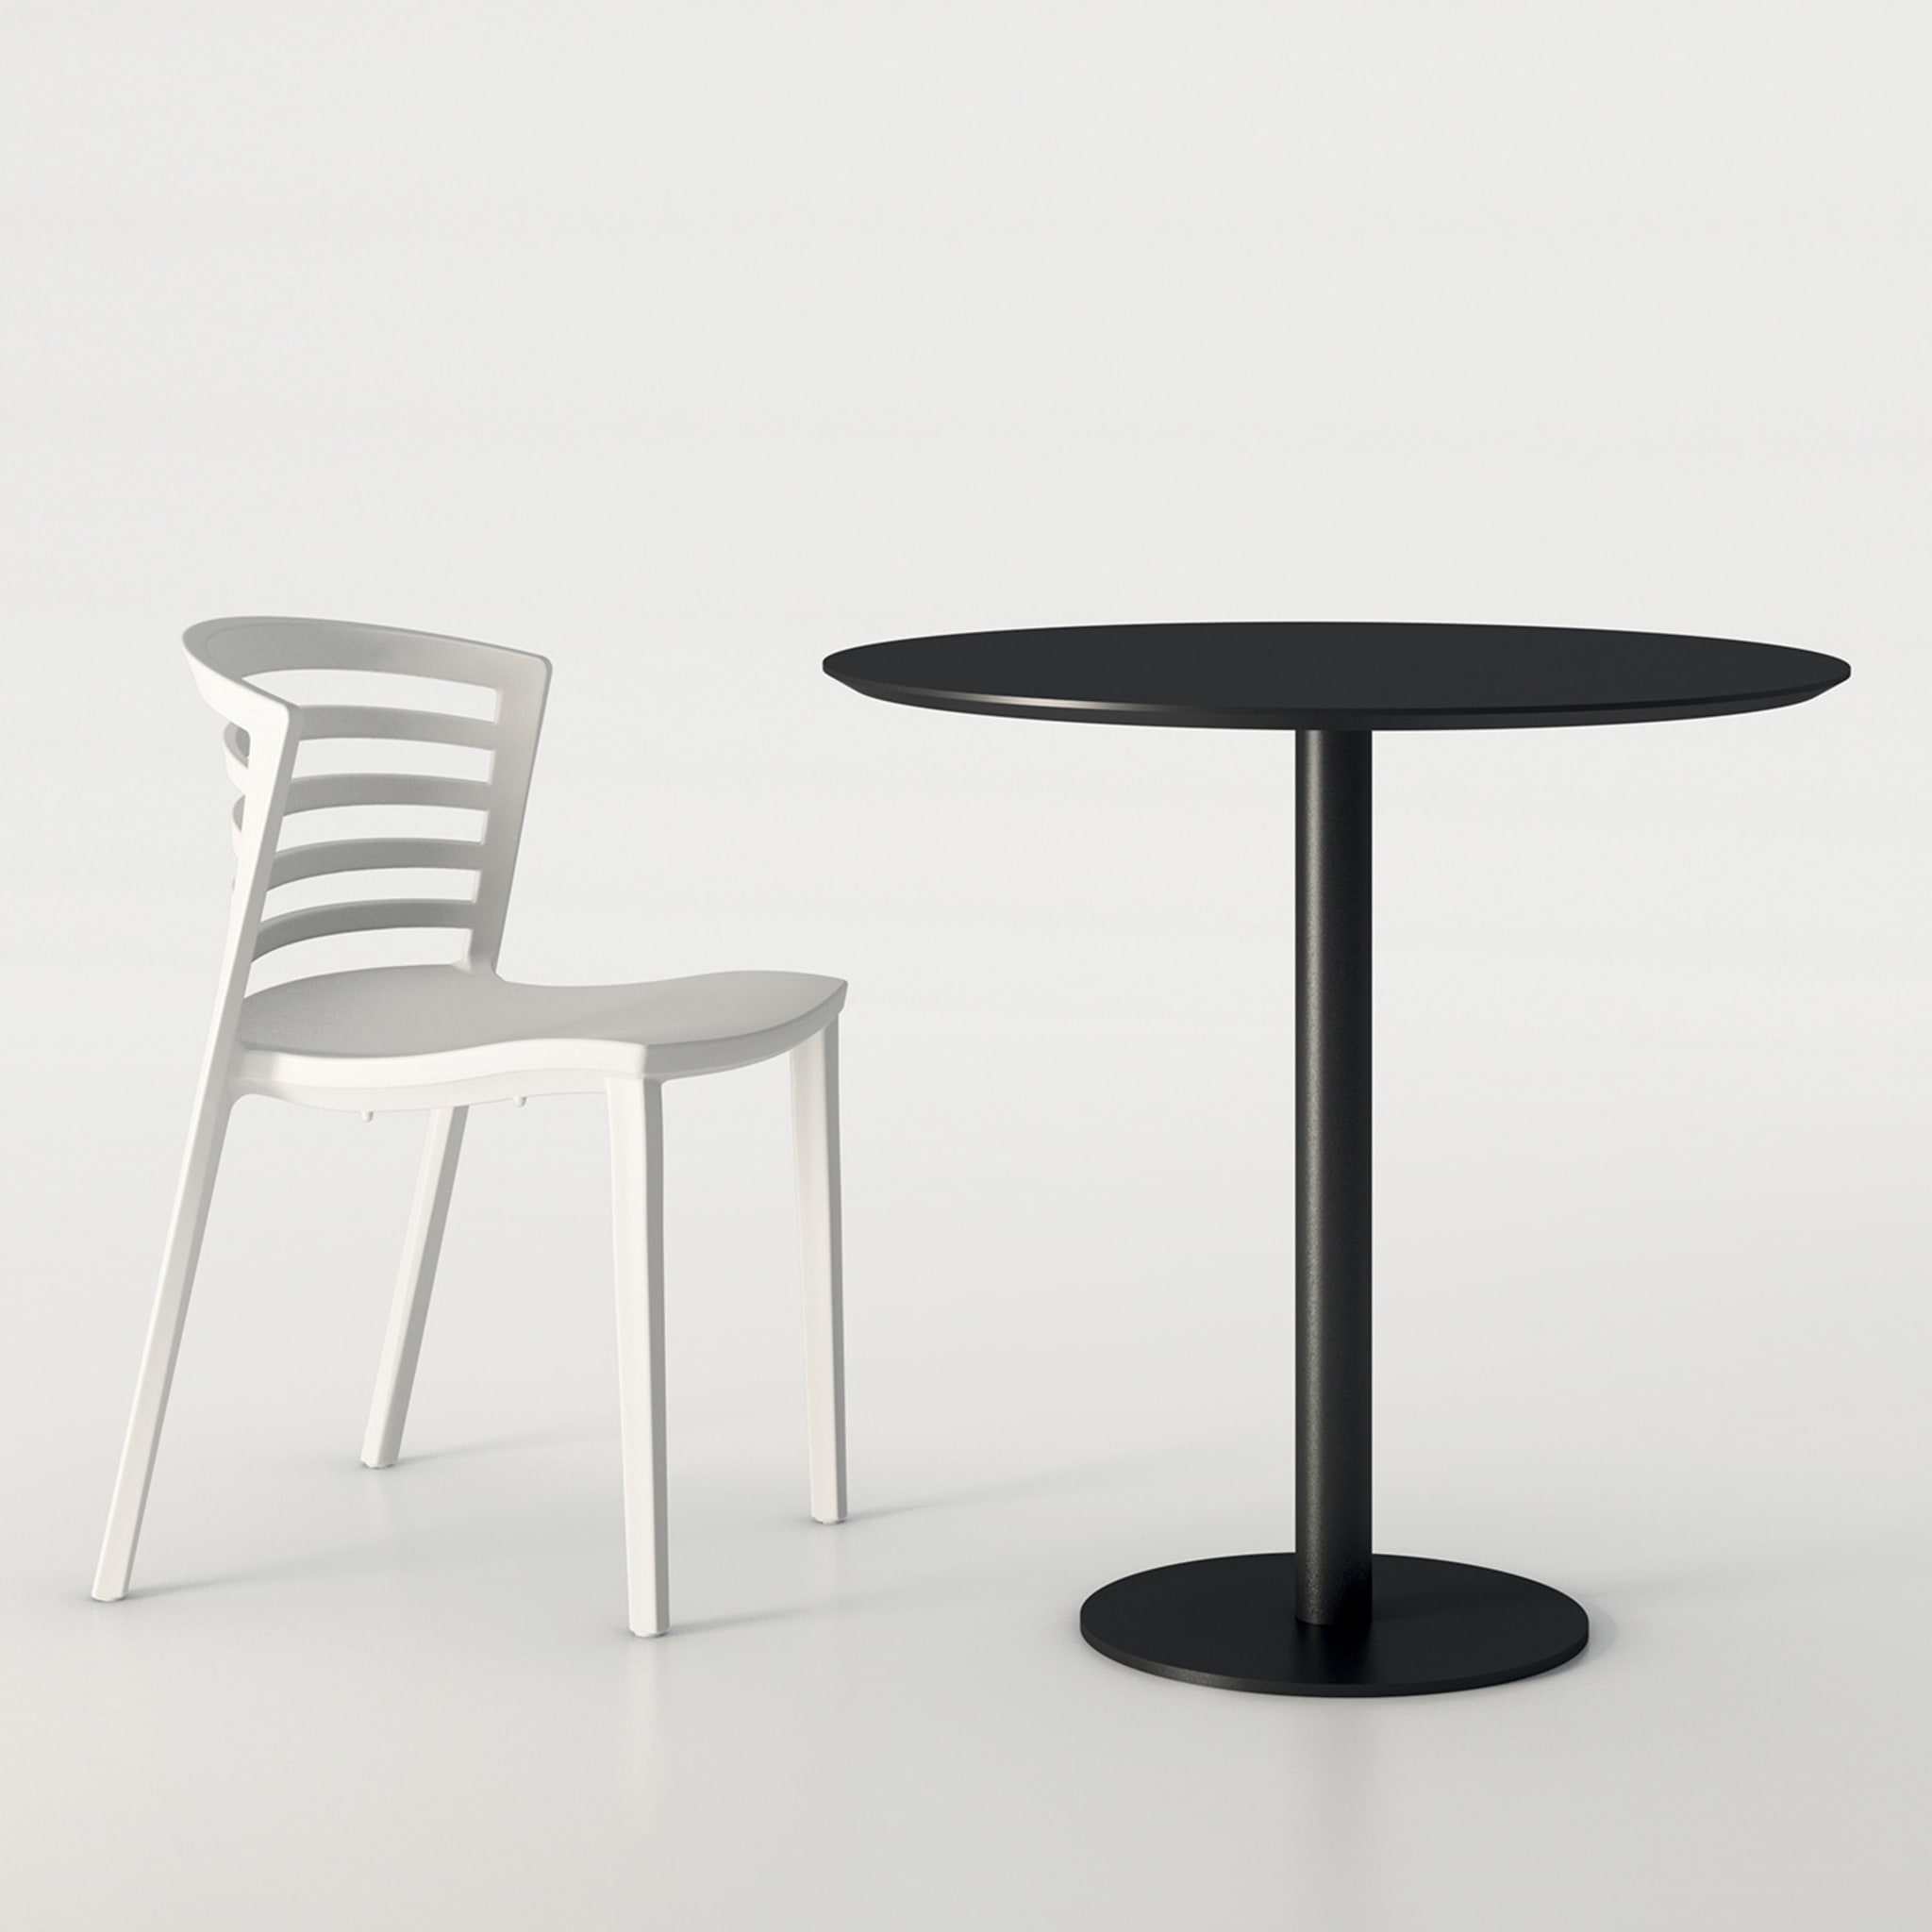 Mediolanum Round Black  Bistro Table by Studio Ideazione - Alternative view 1